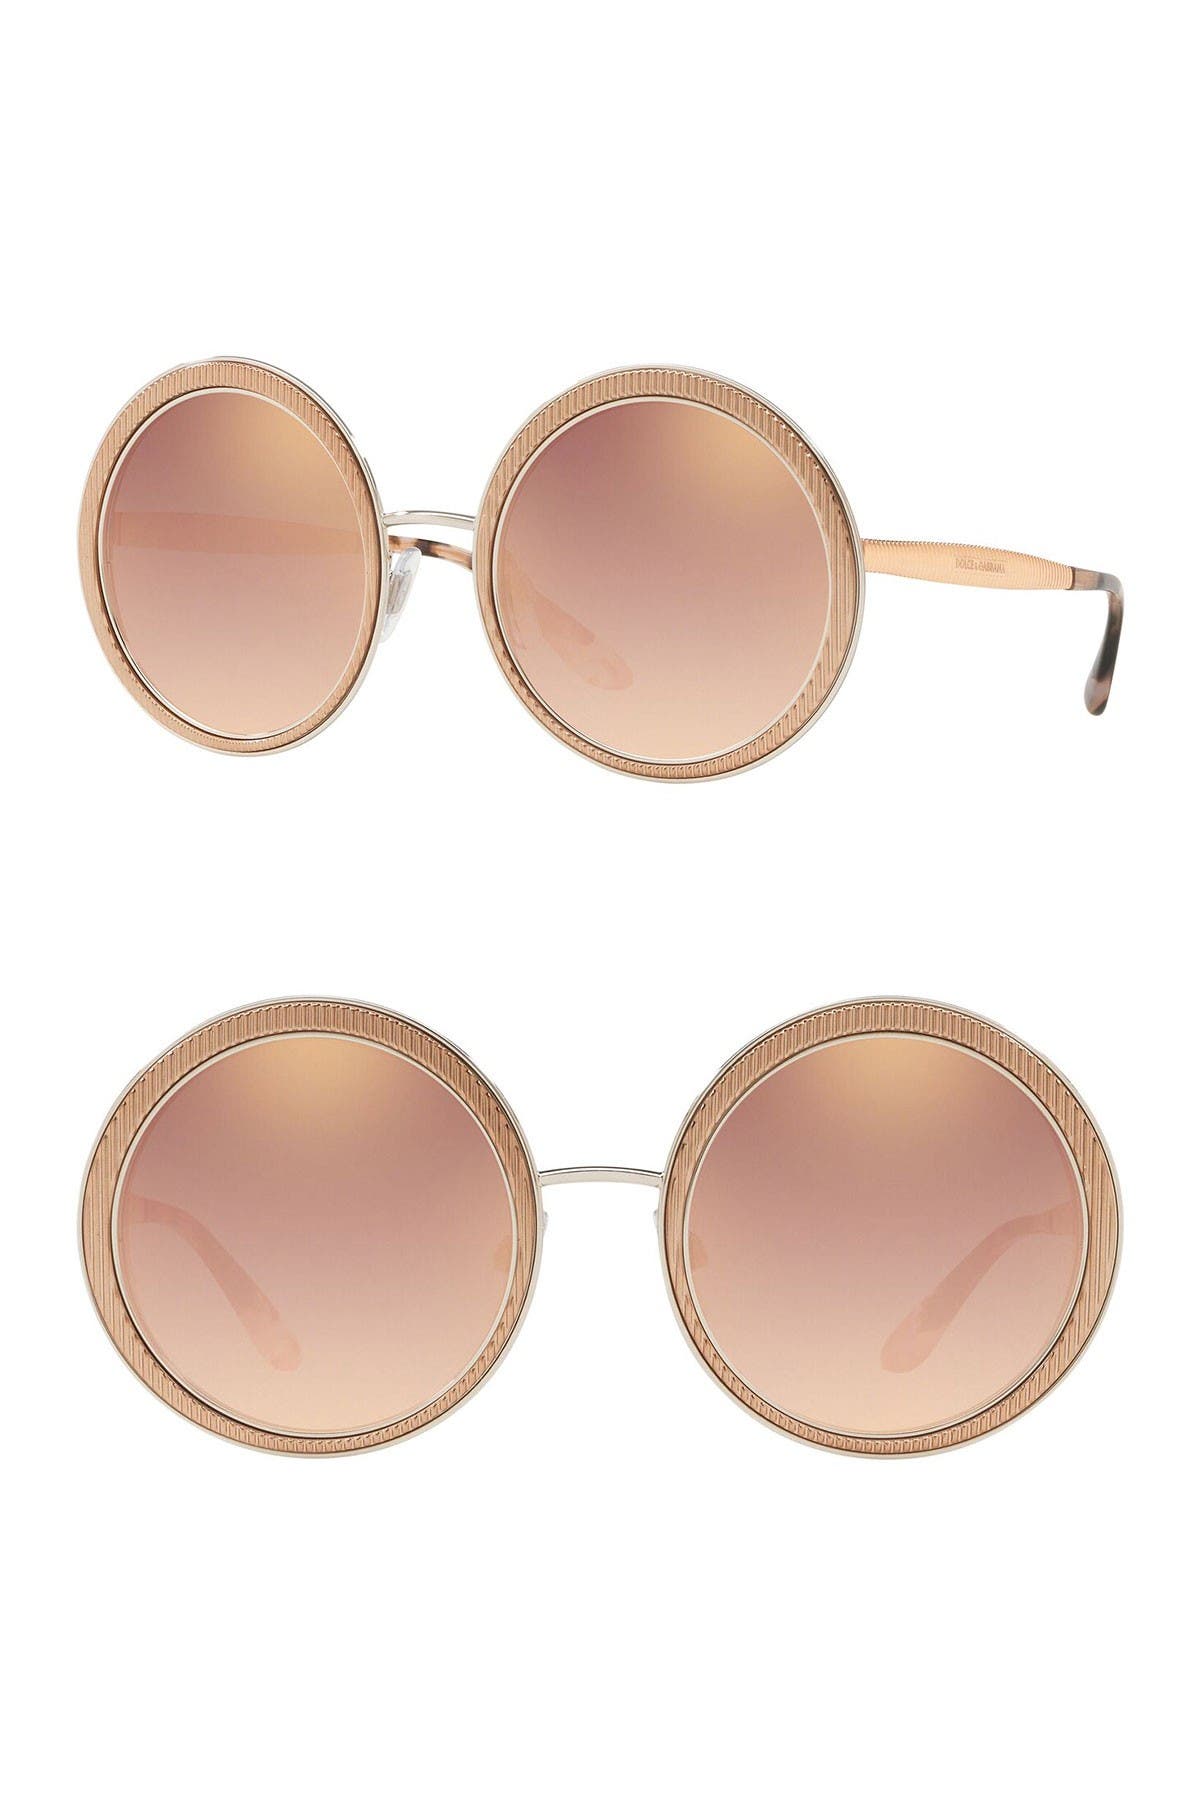 dolce and gabbana round sunglasses